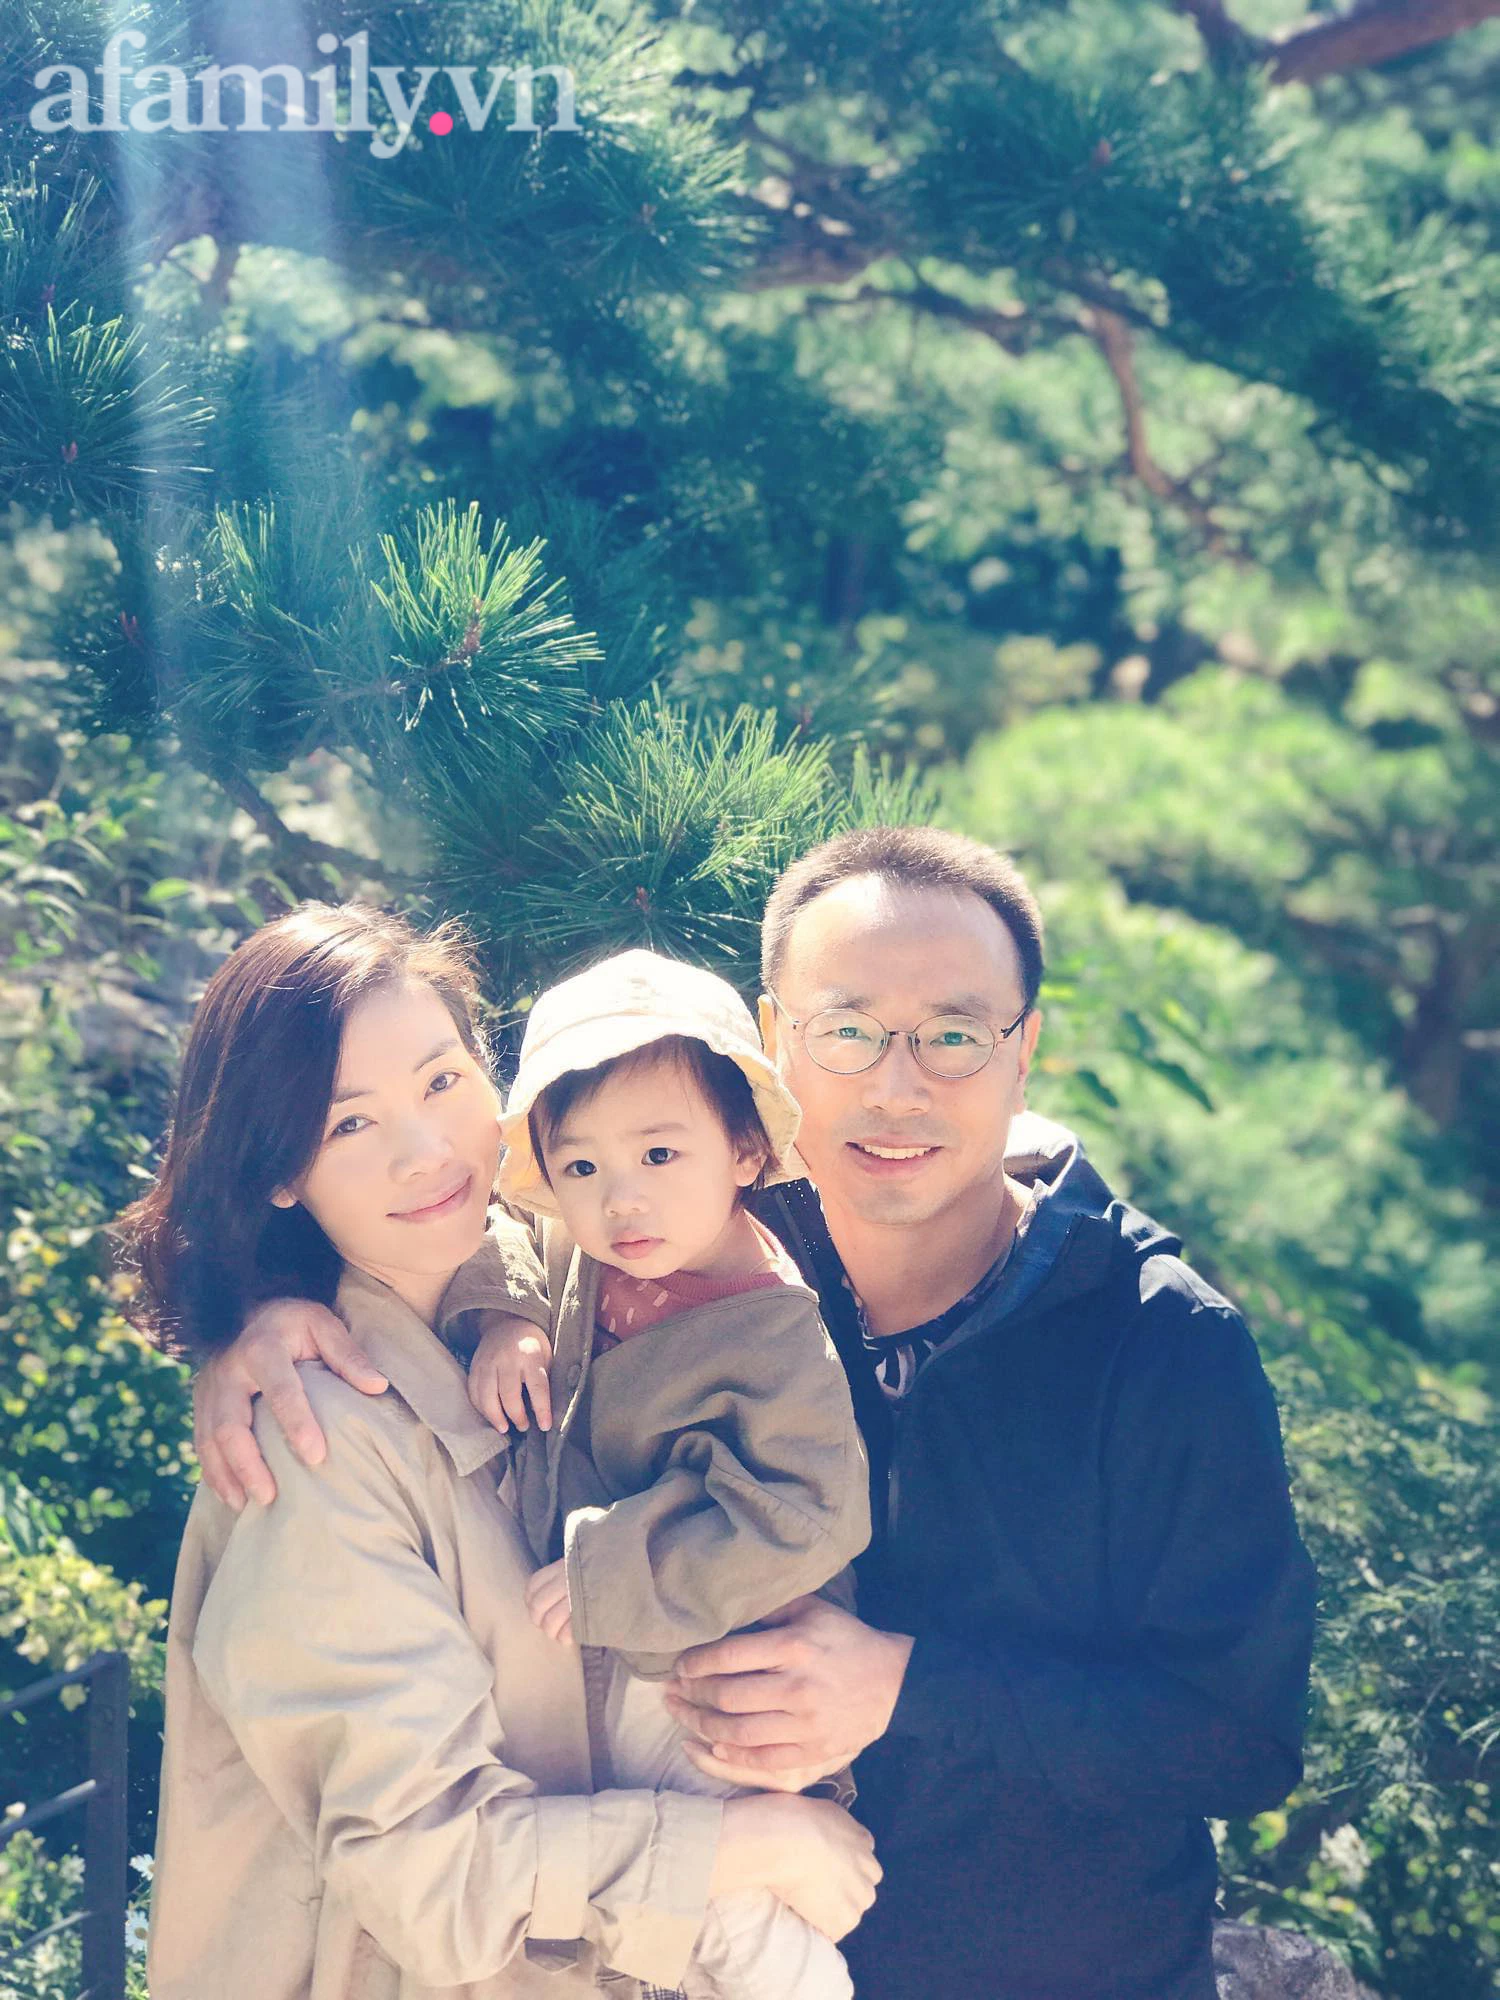 Gái Việt cưới trai Hàn và chuyện mẹ chồng cực phẩm: Lần gặp mặt đầu có hành động 